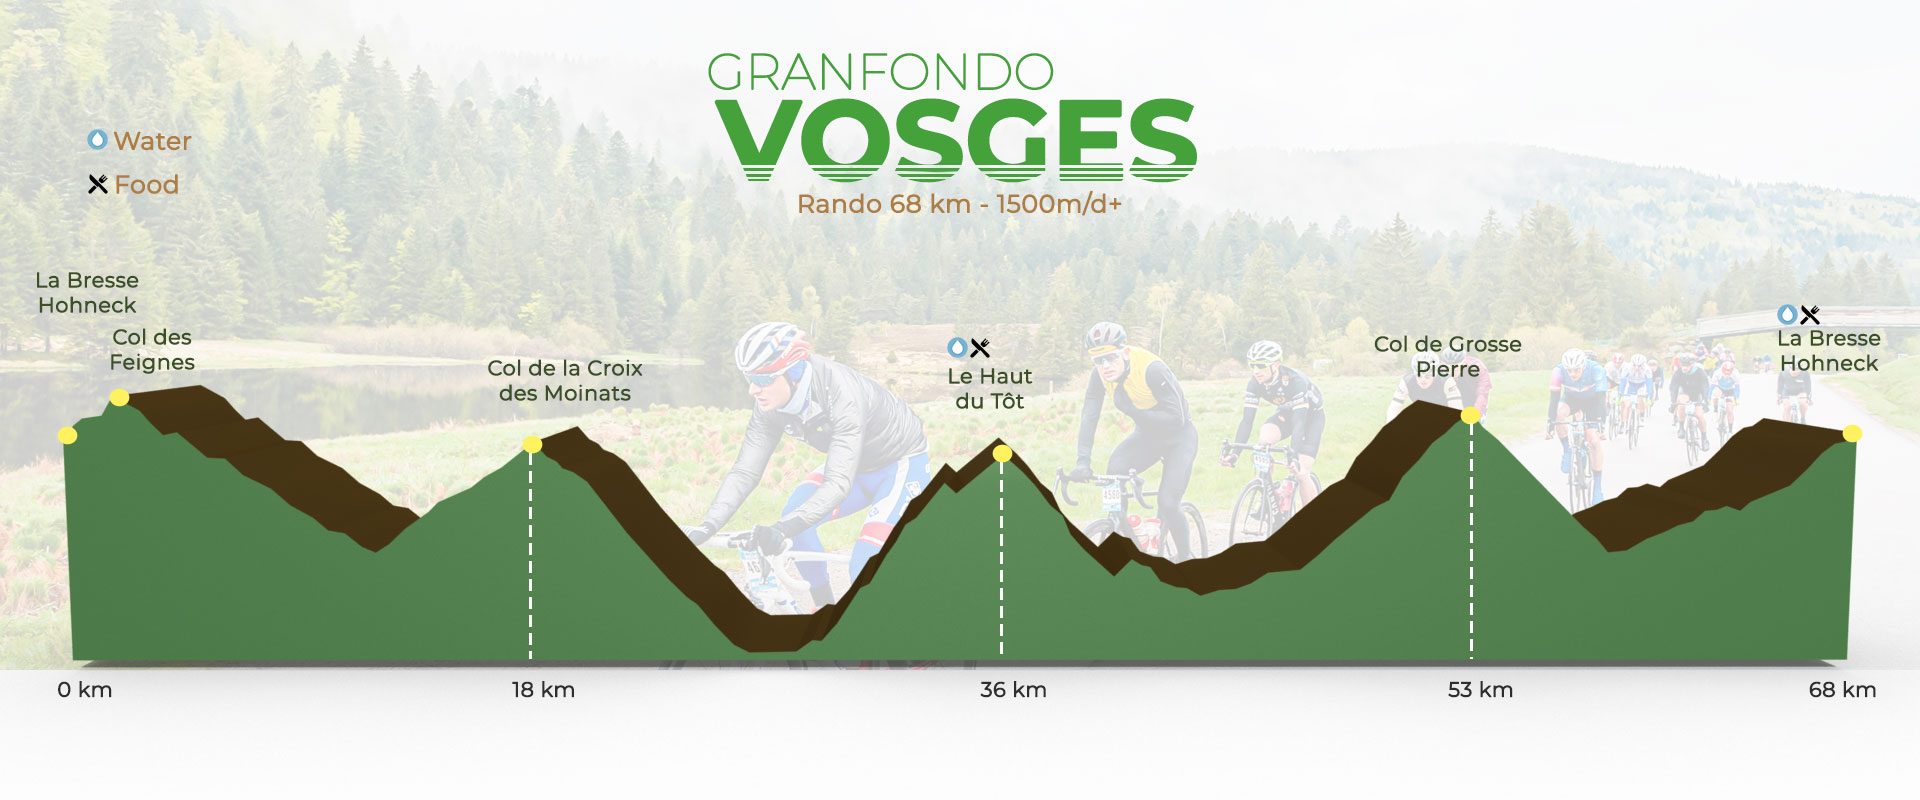 Granfondo Vosges (parcours, tarifs, horaires, règlement, classements)